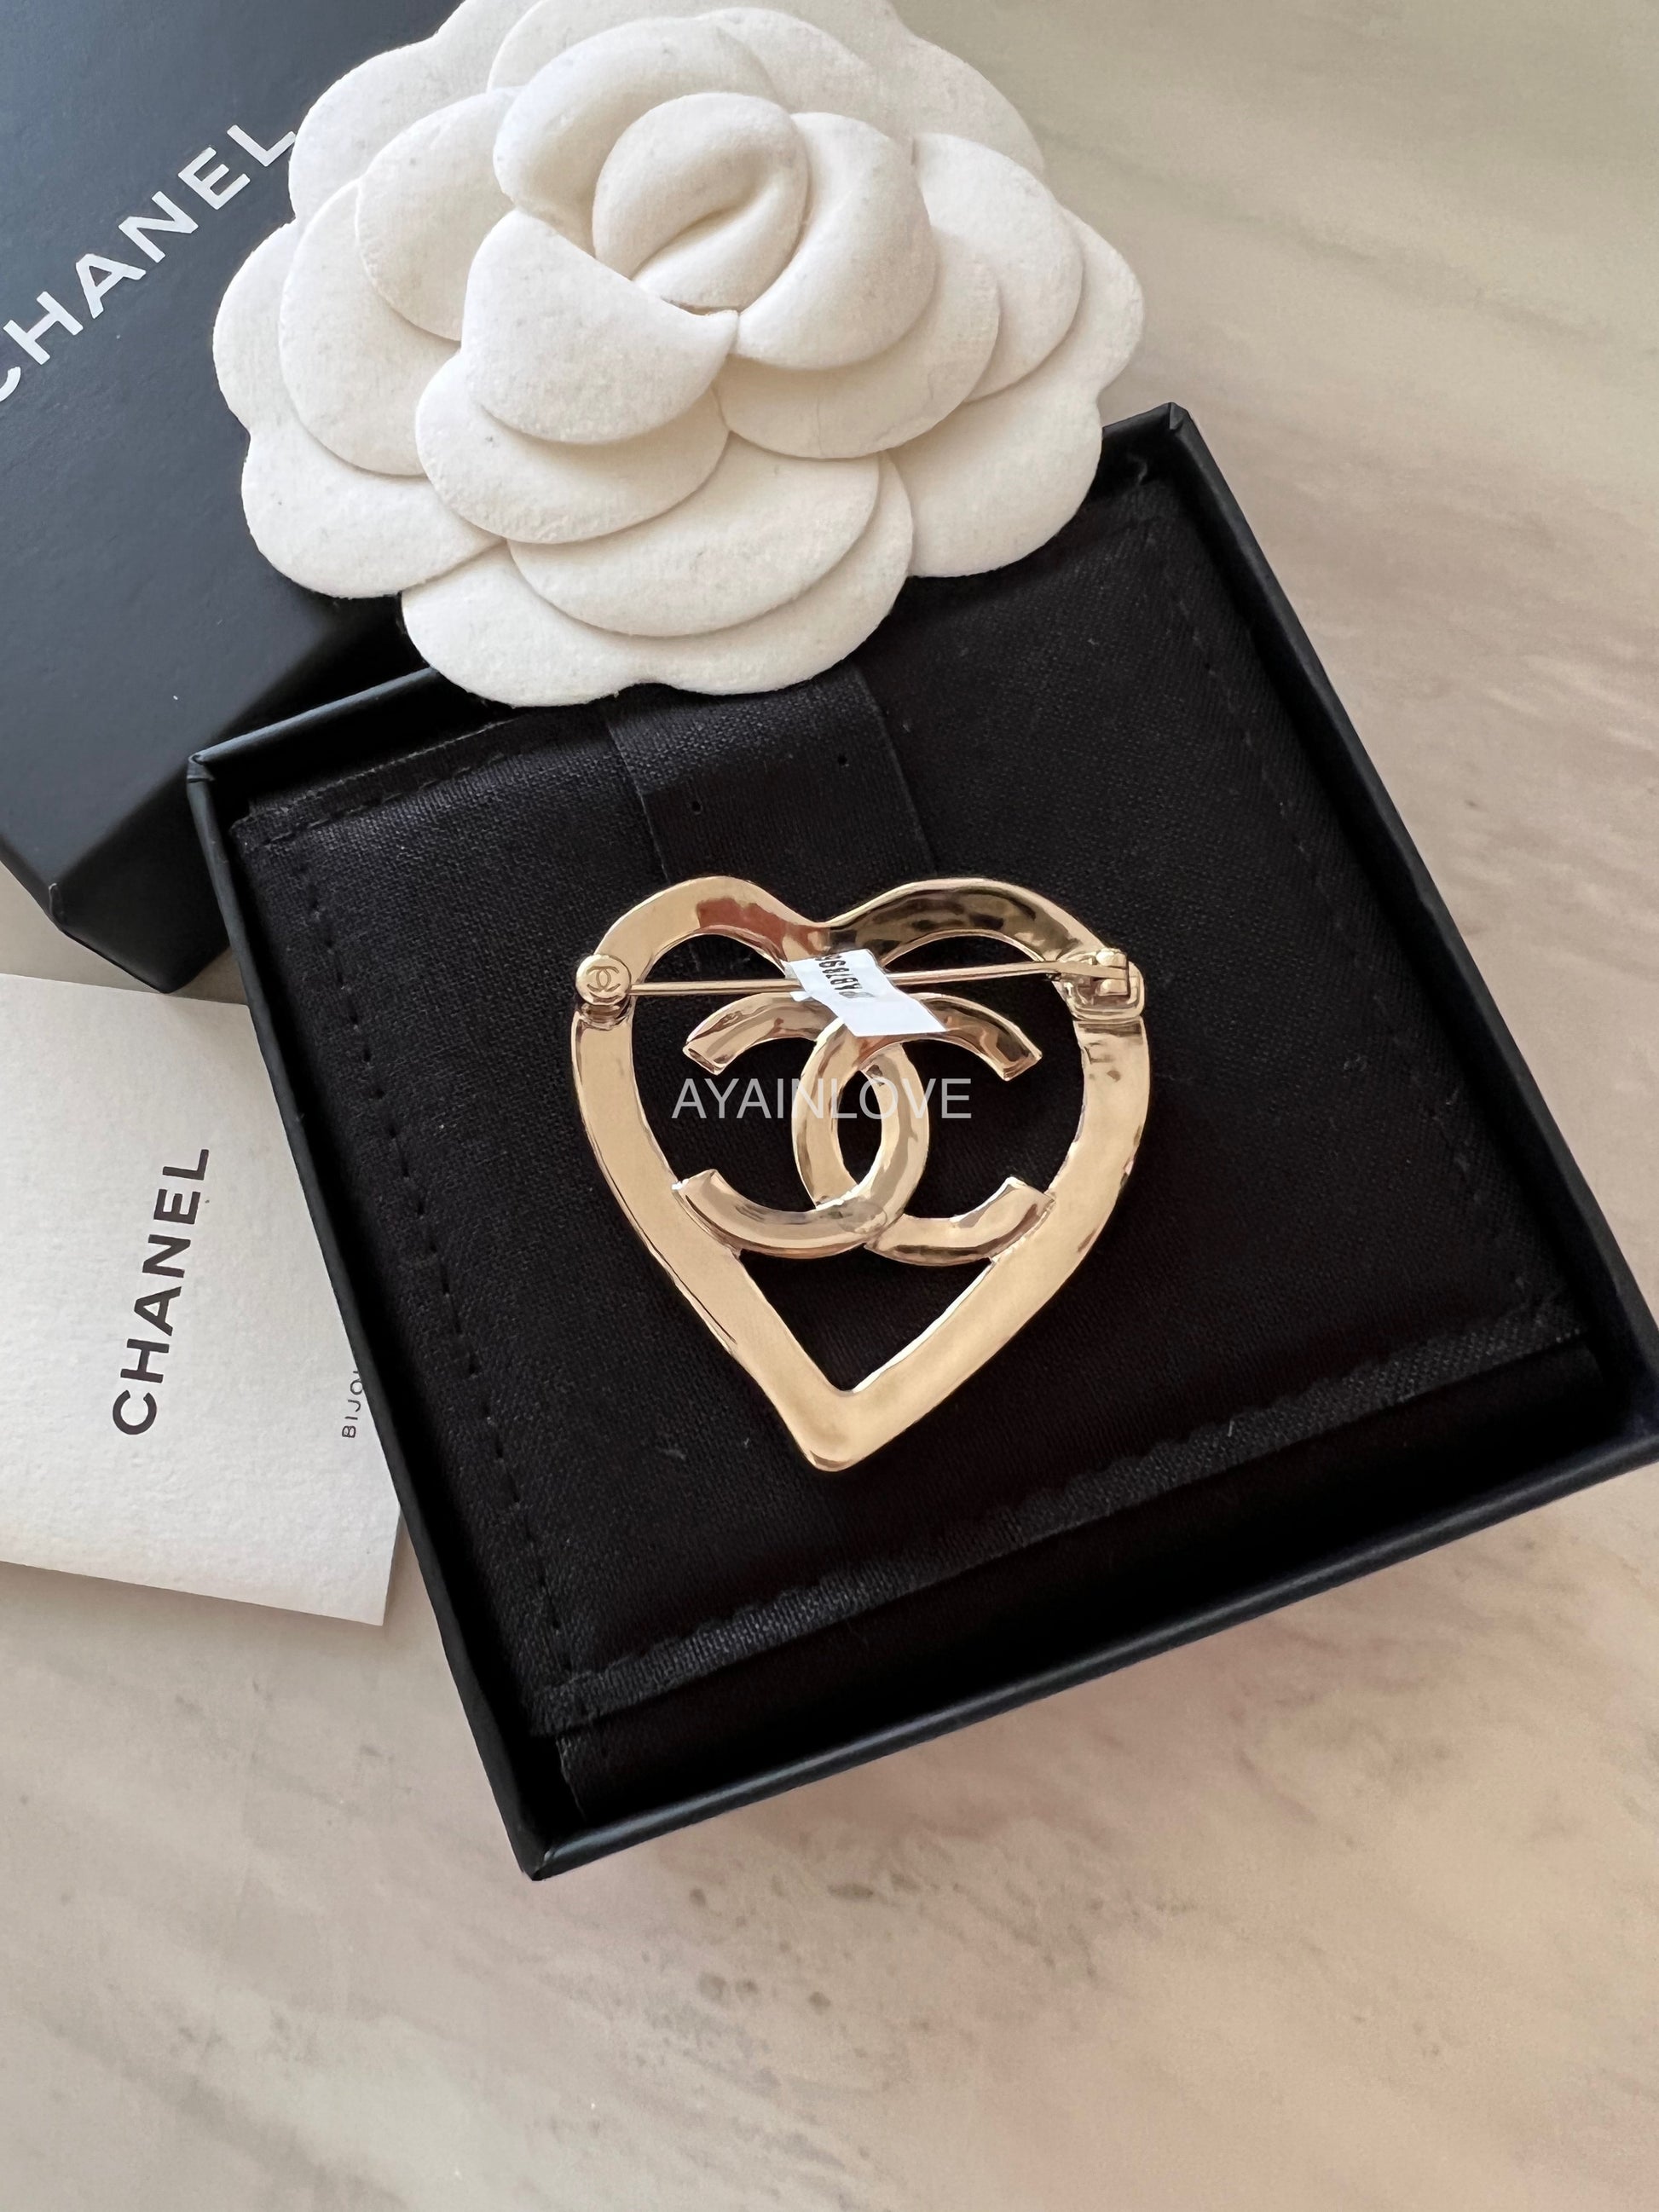 Chanel Light Gold Crystal Heart CC Brooch